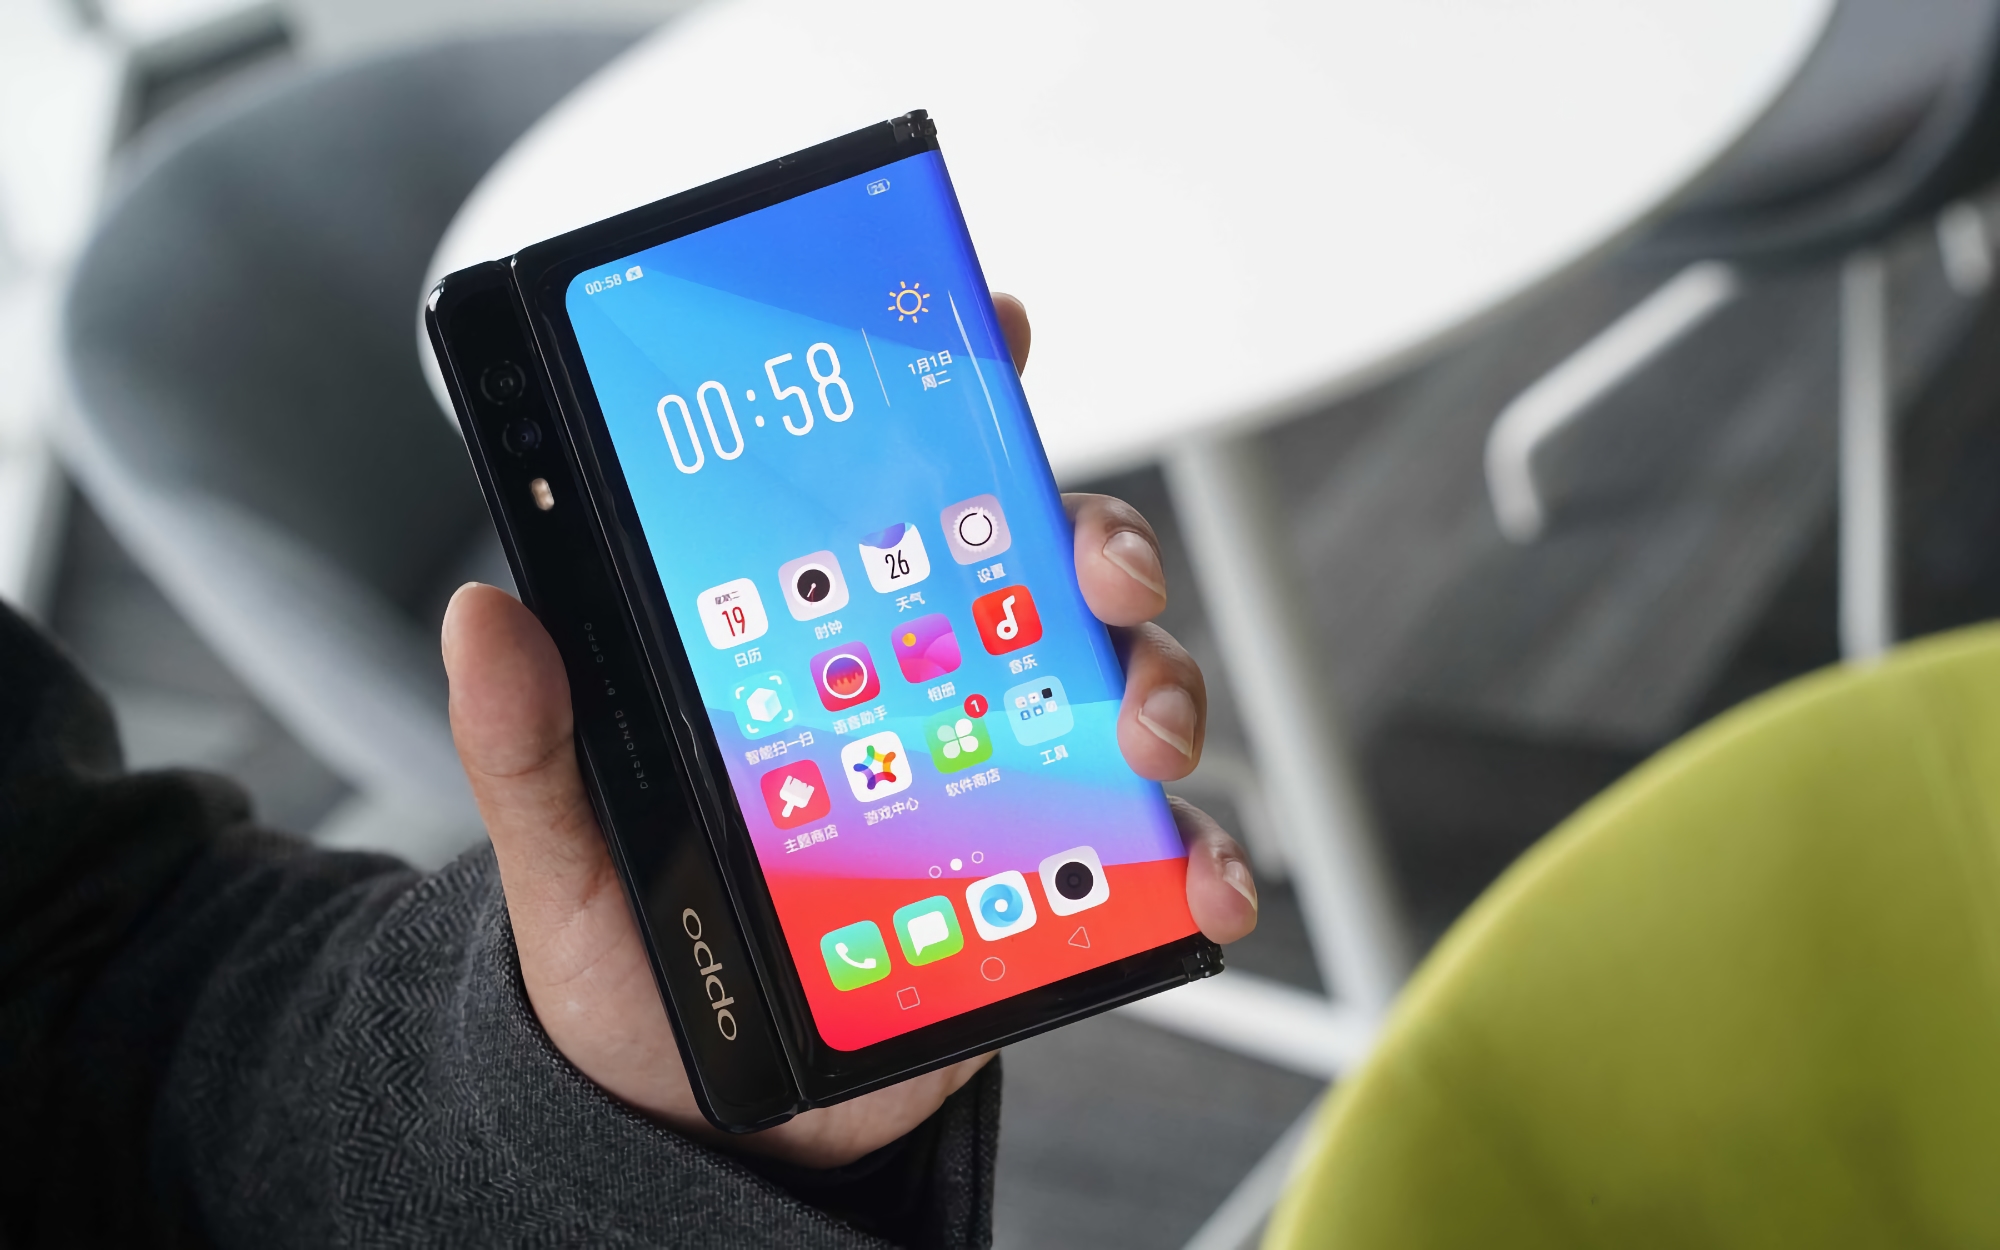 Plotka: Pierwszy składany smartfon OPPO zostanie zaprezentowany w przyszłym miesiącu